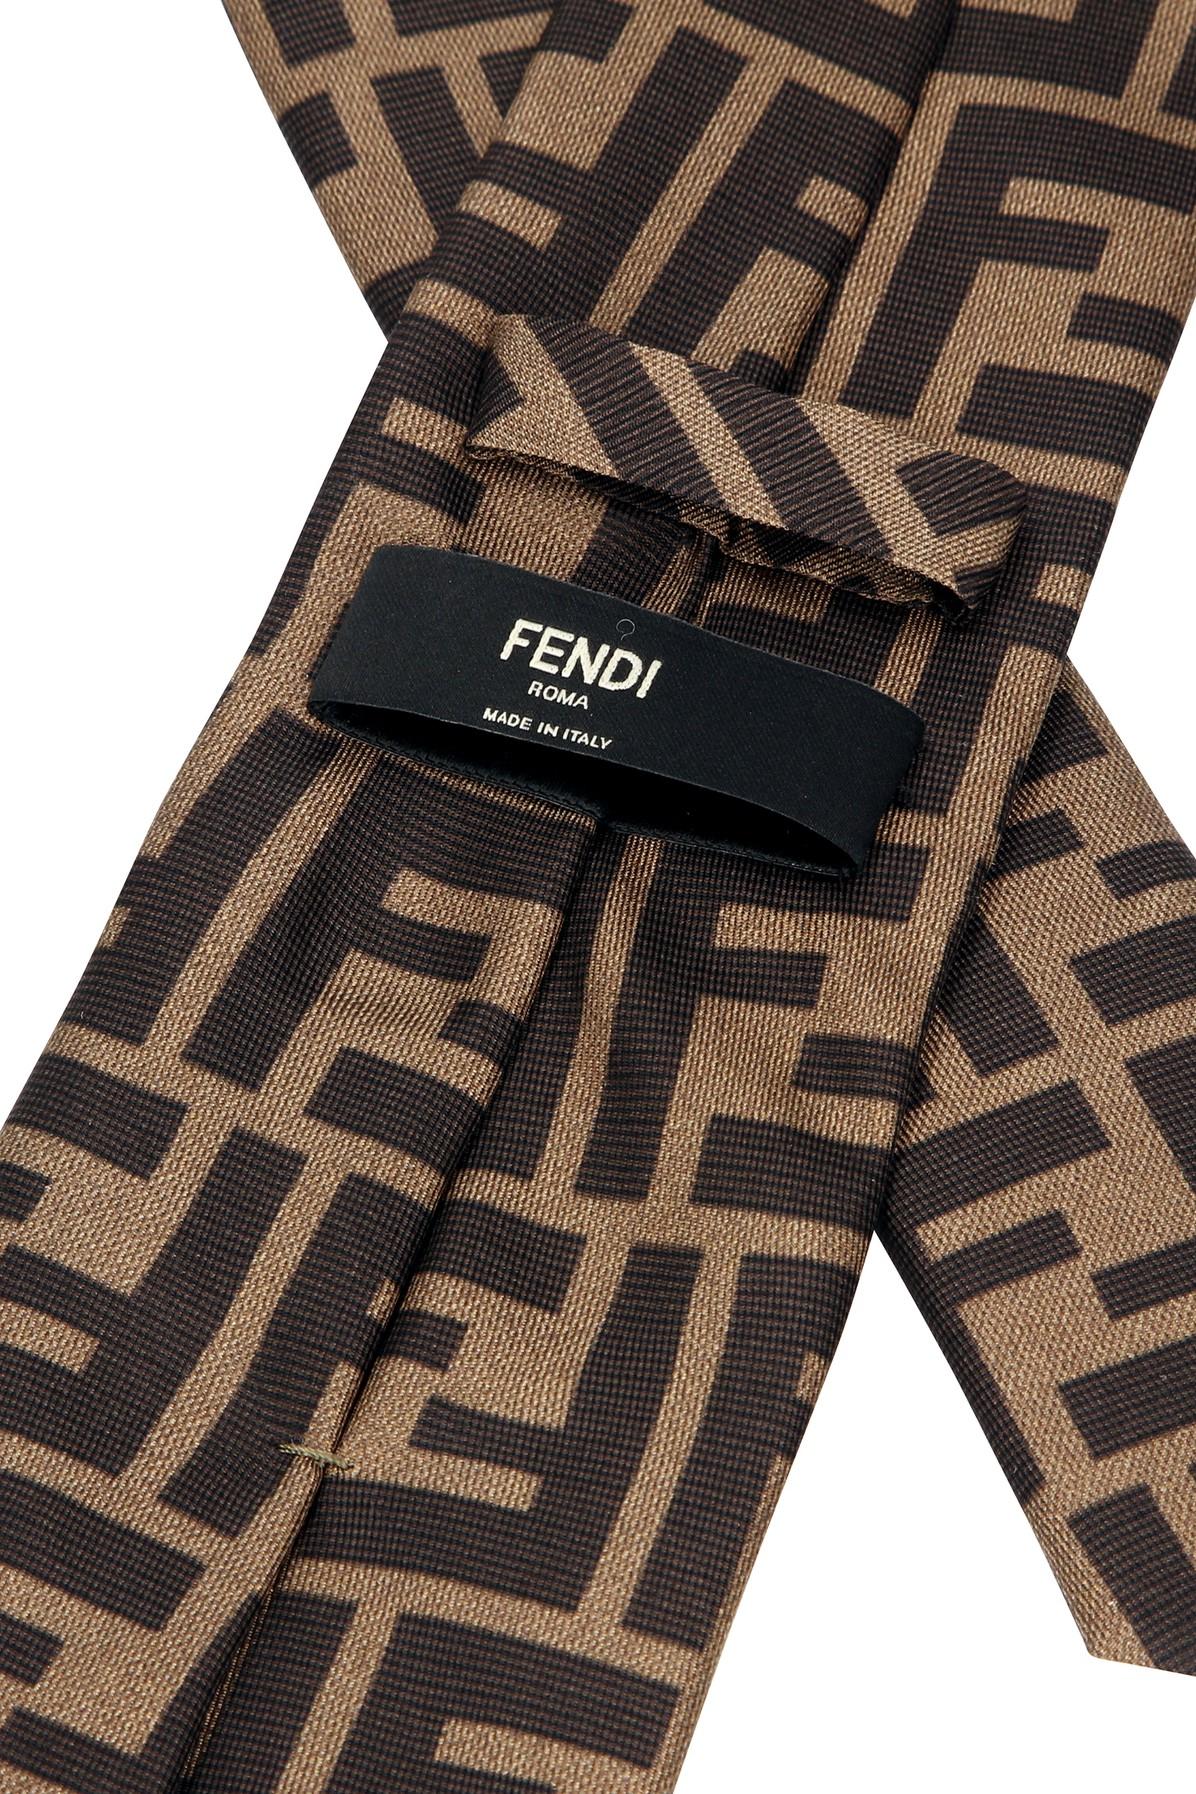 Fendi Tie in Brown/ Black (Brown) for Men - Lyst